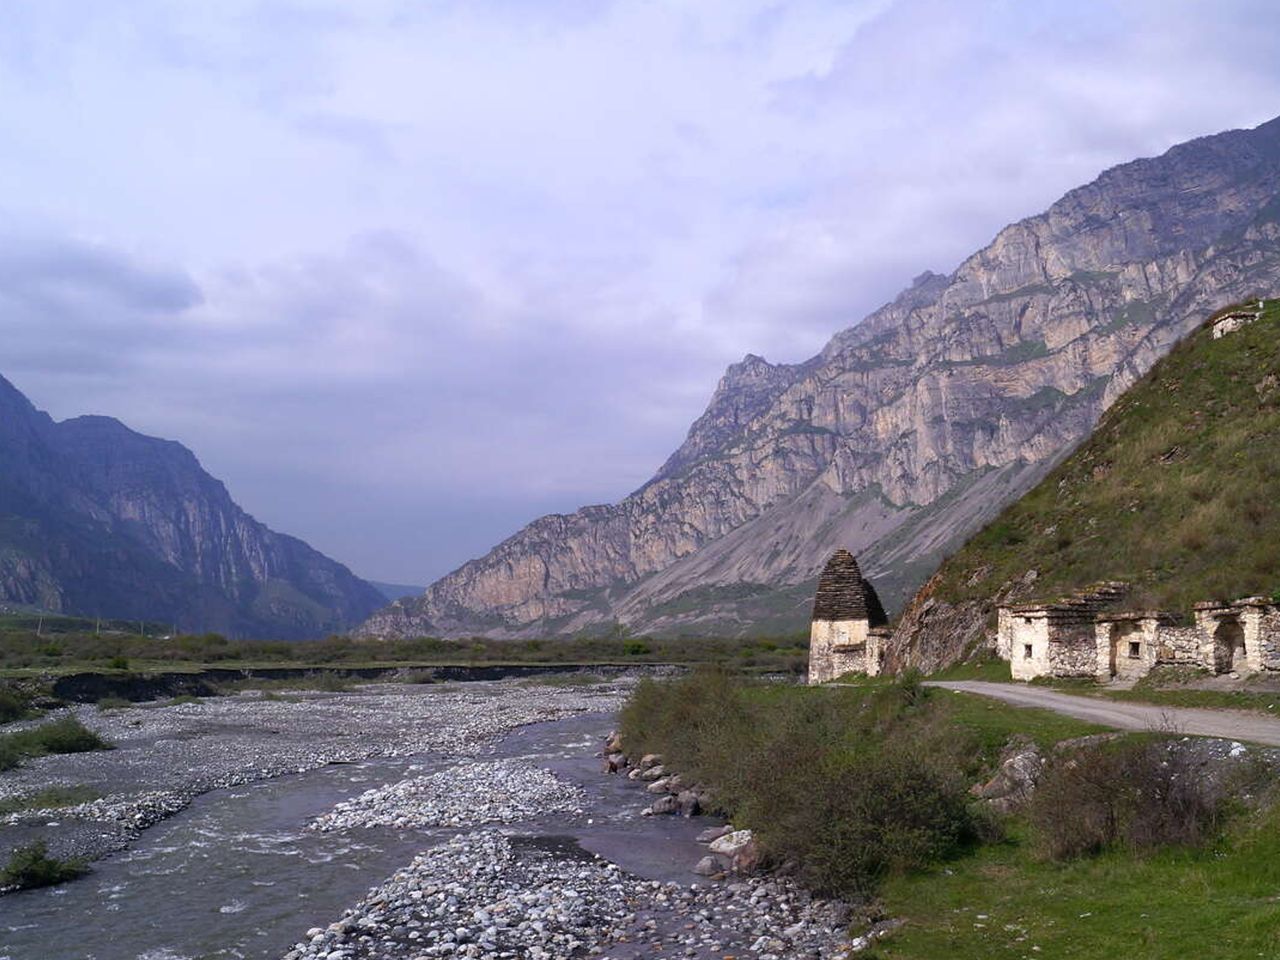 Обзорный автотур по Северной Осетии — Алании | Цена 17500₽, отзывы, описание экскурсии